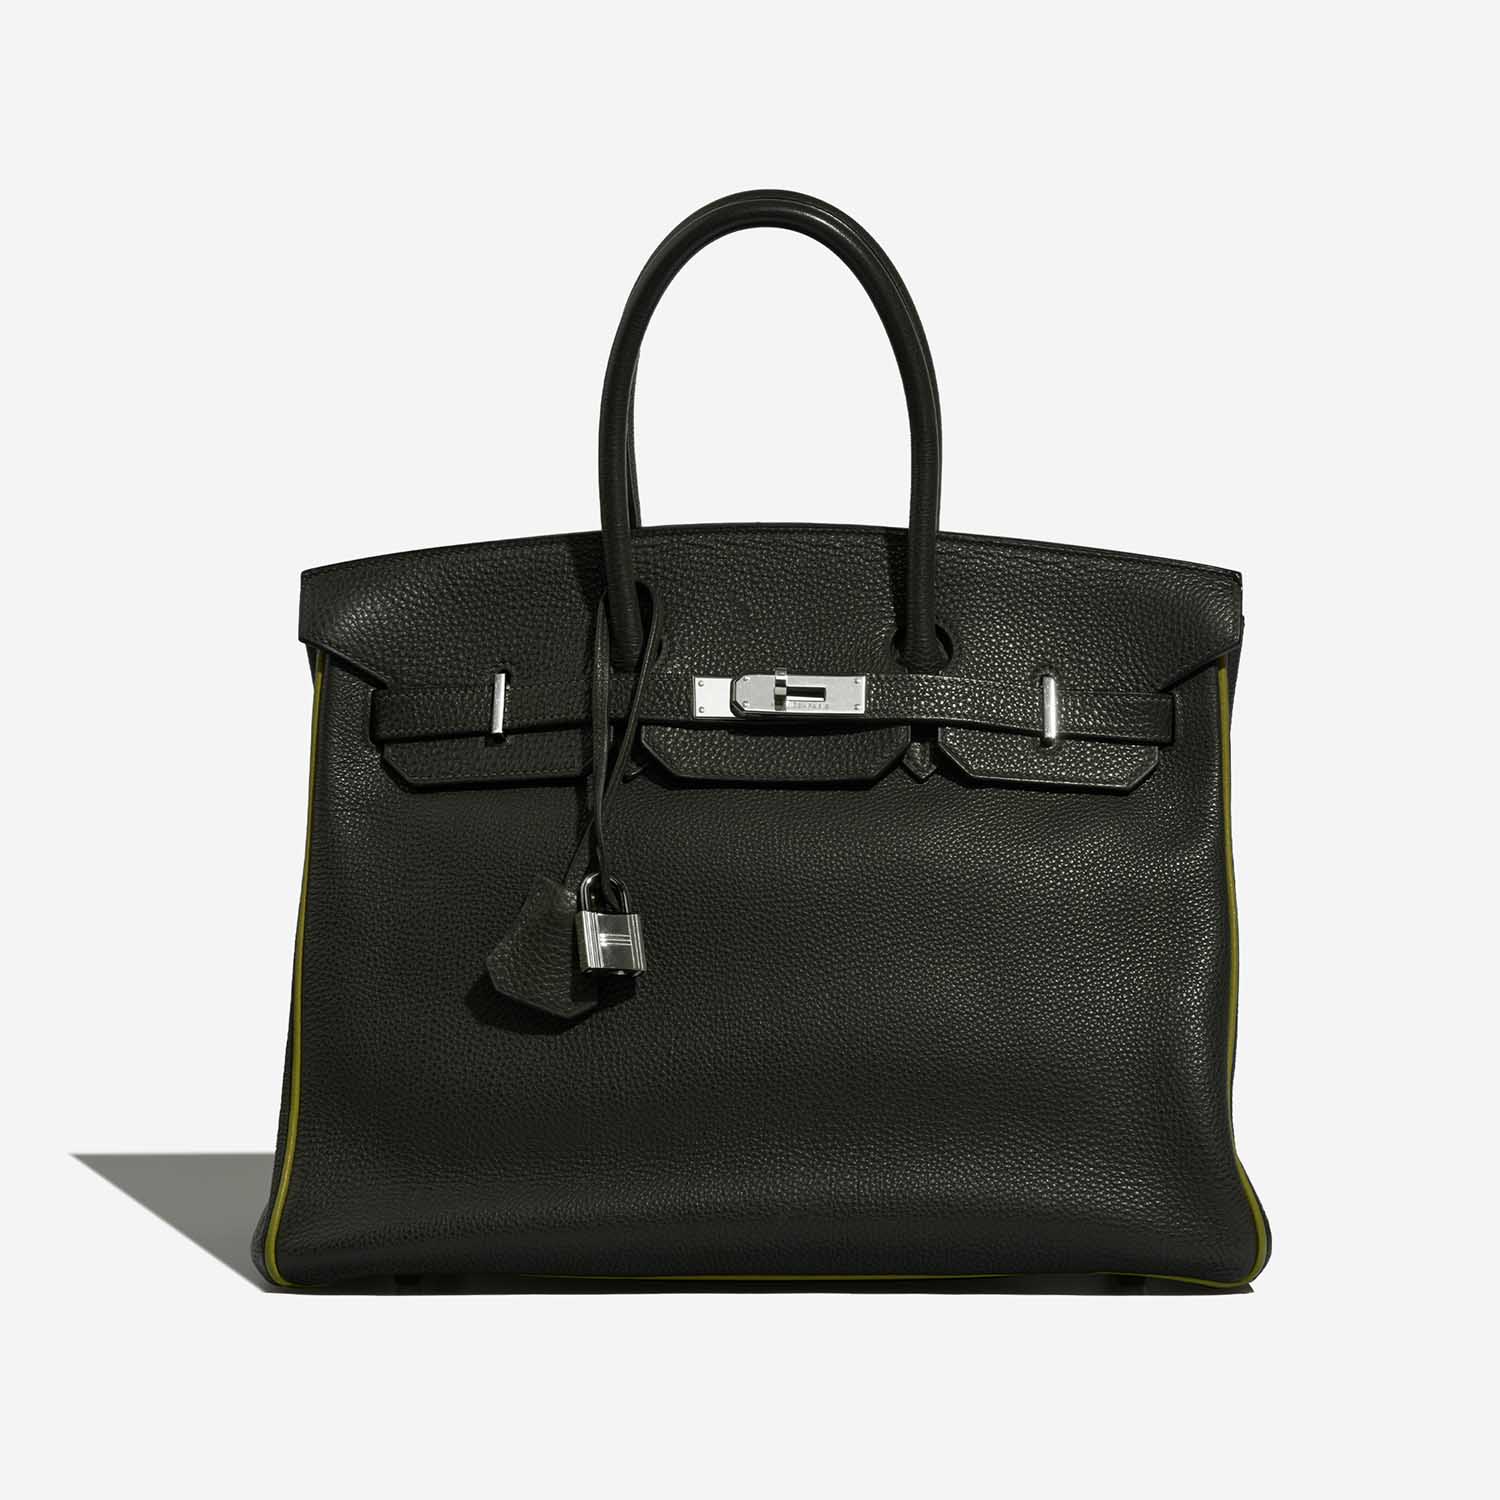 Hermès Birkin 35 VertFonce-VertChartreuse-VertAnis Front  | Sell your designer bag on Saclab.com